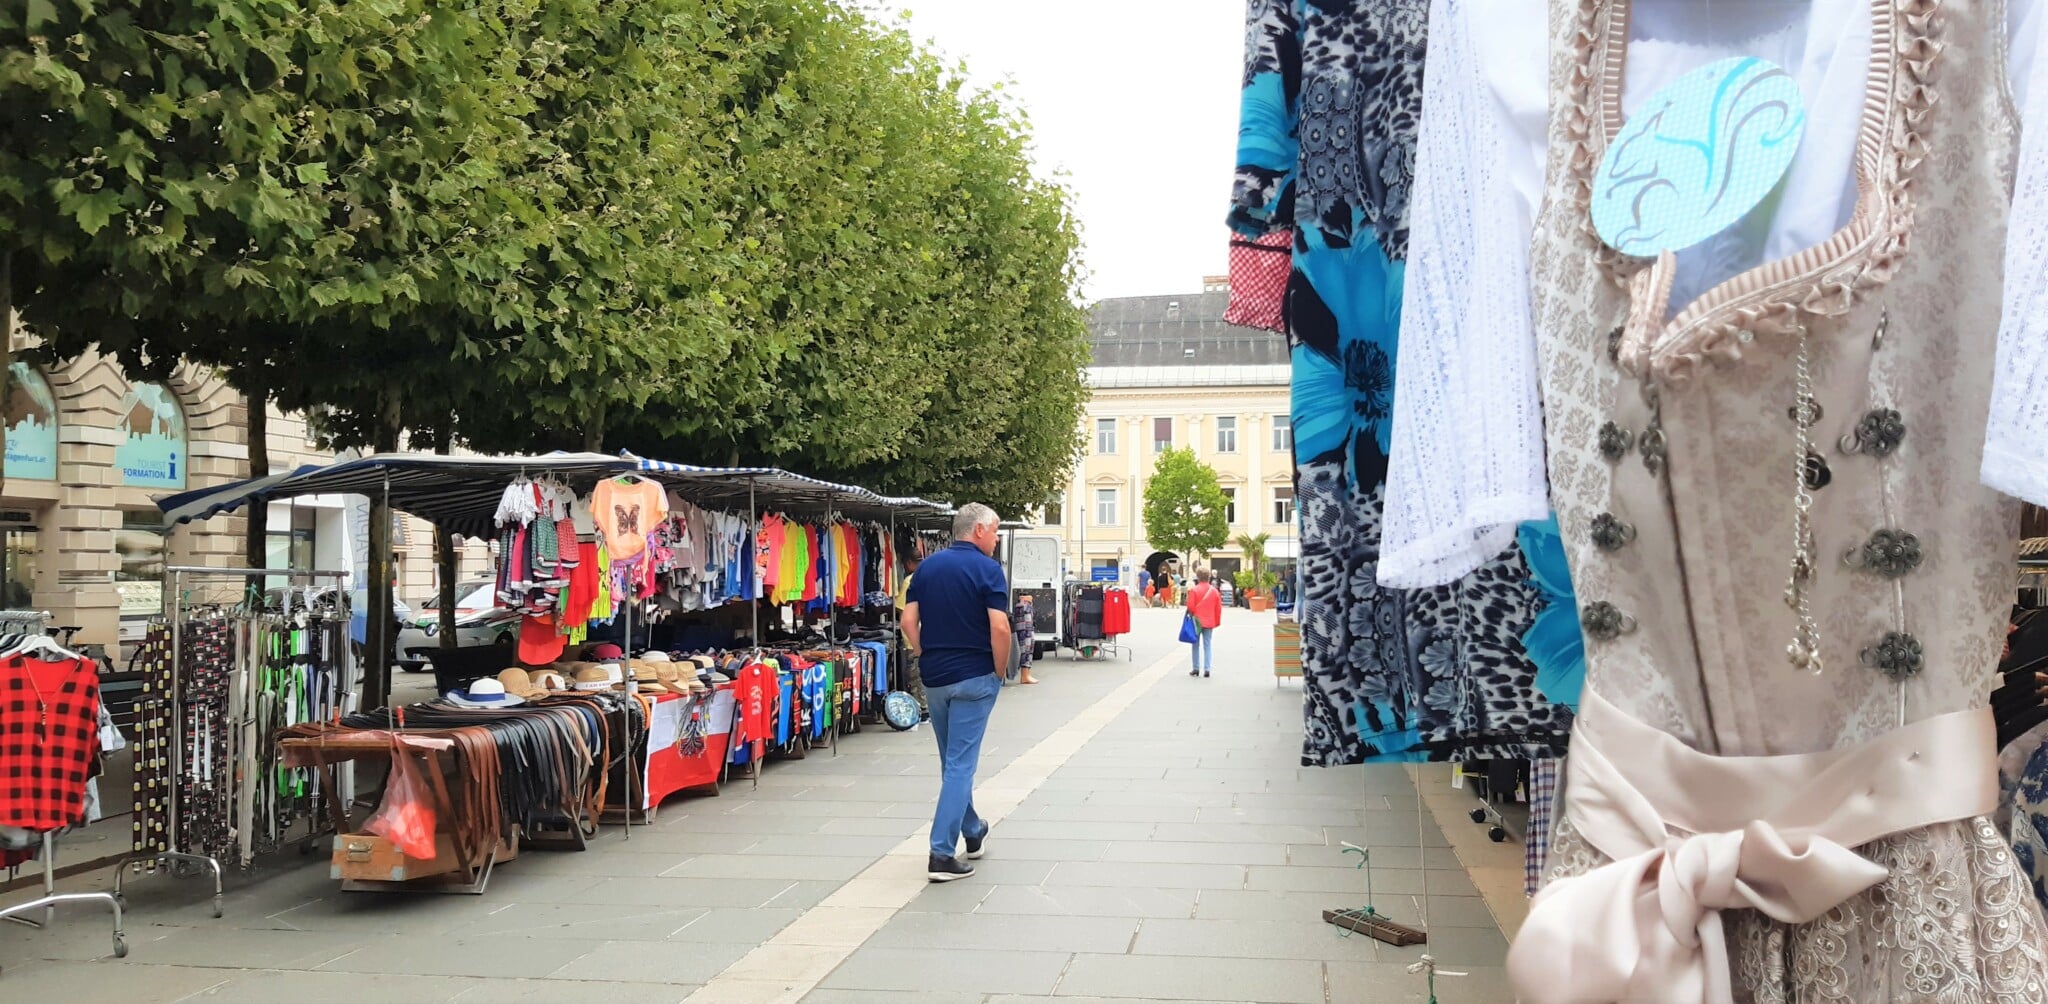 Am Monatsmarkt am Neuer Platz findest du Kleidung und andere markttypische Waren.